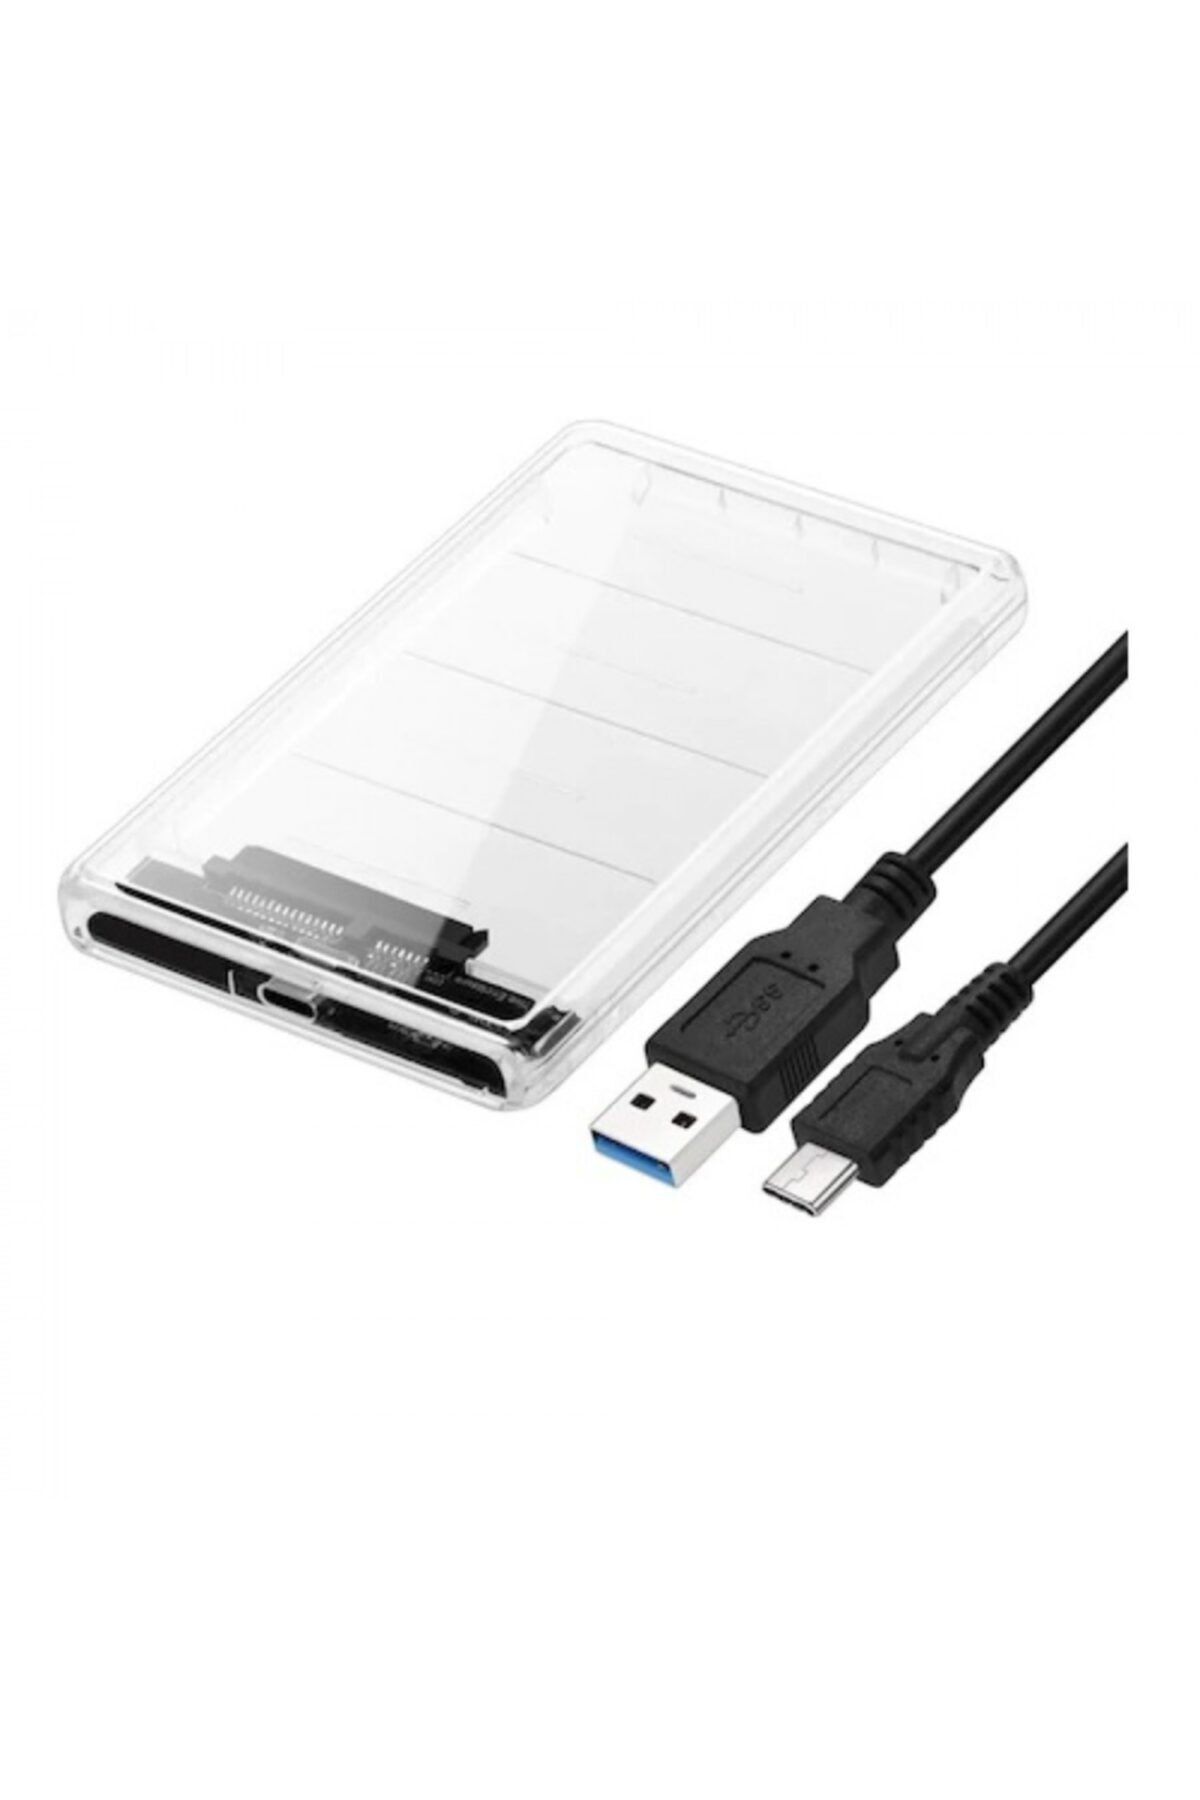 Genel Markalar 2.5" USB 3.0 CDG-HDC-30TC Sata Harddisk Kutusu Şeffaf